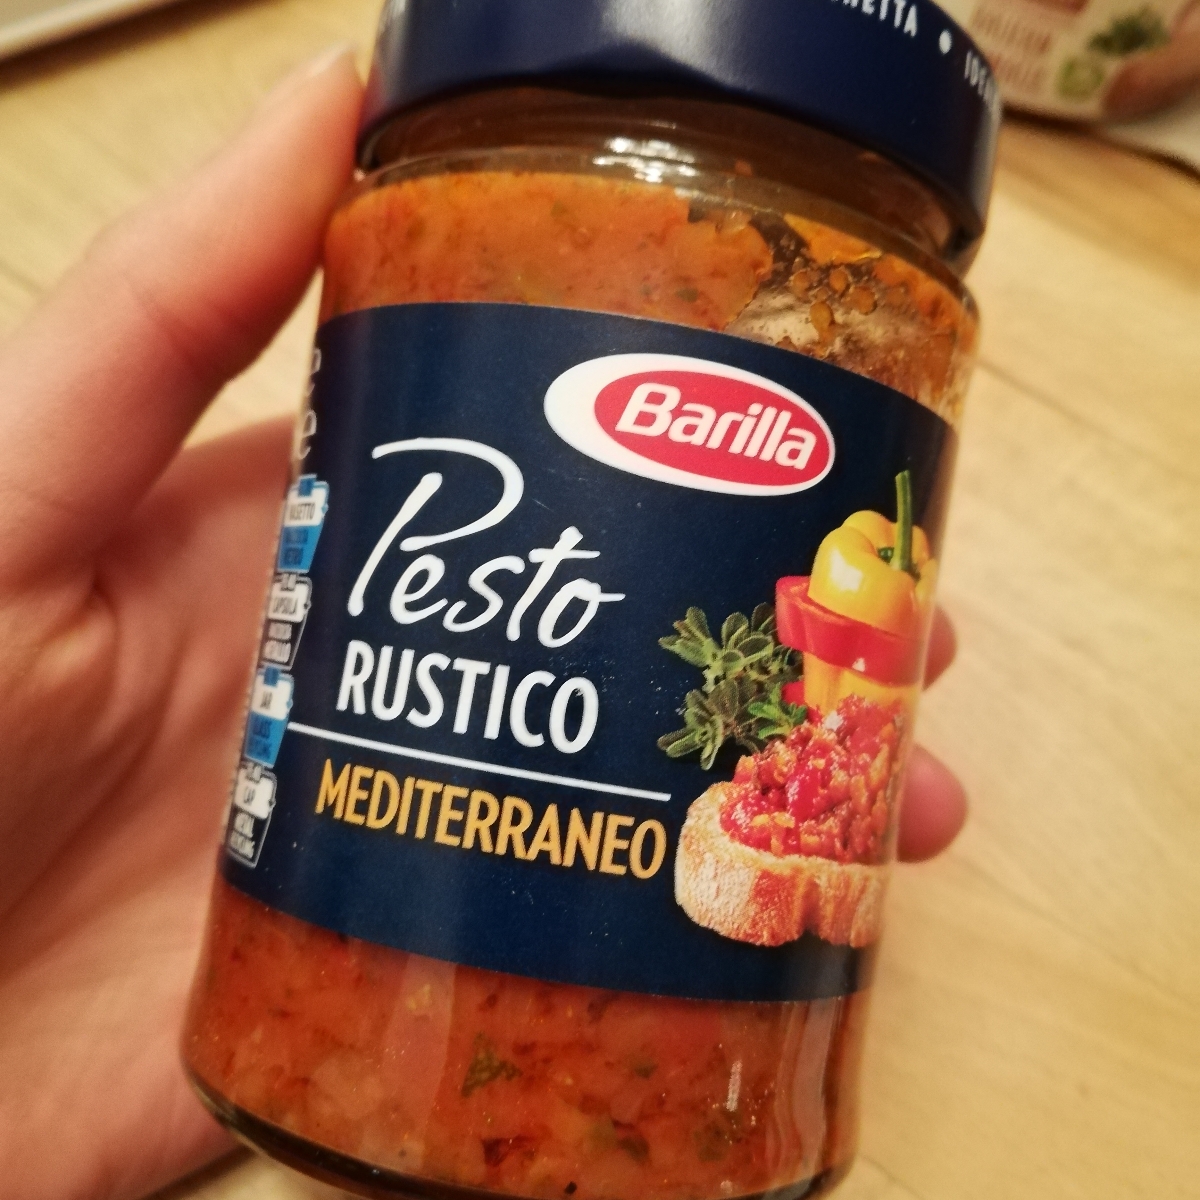 Barilla Pesto rustico Mediterraneo Review | abillion